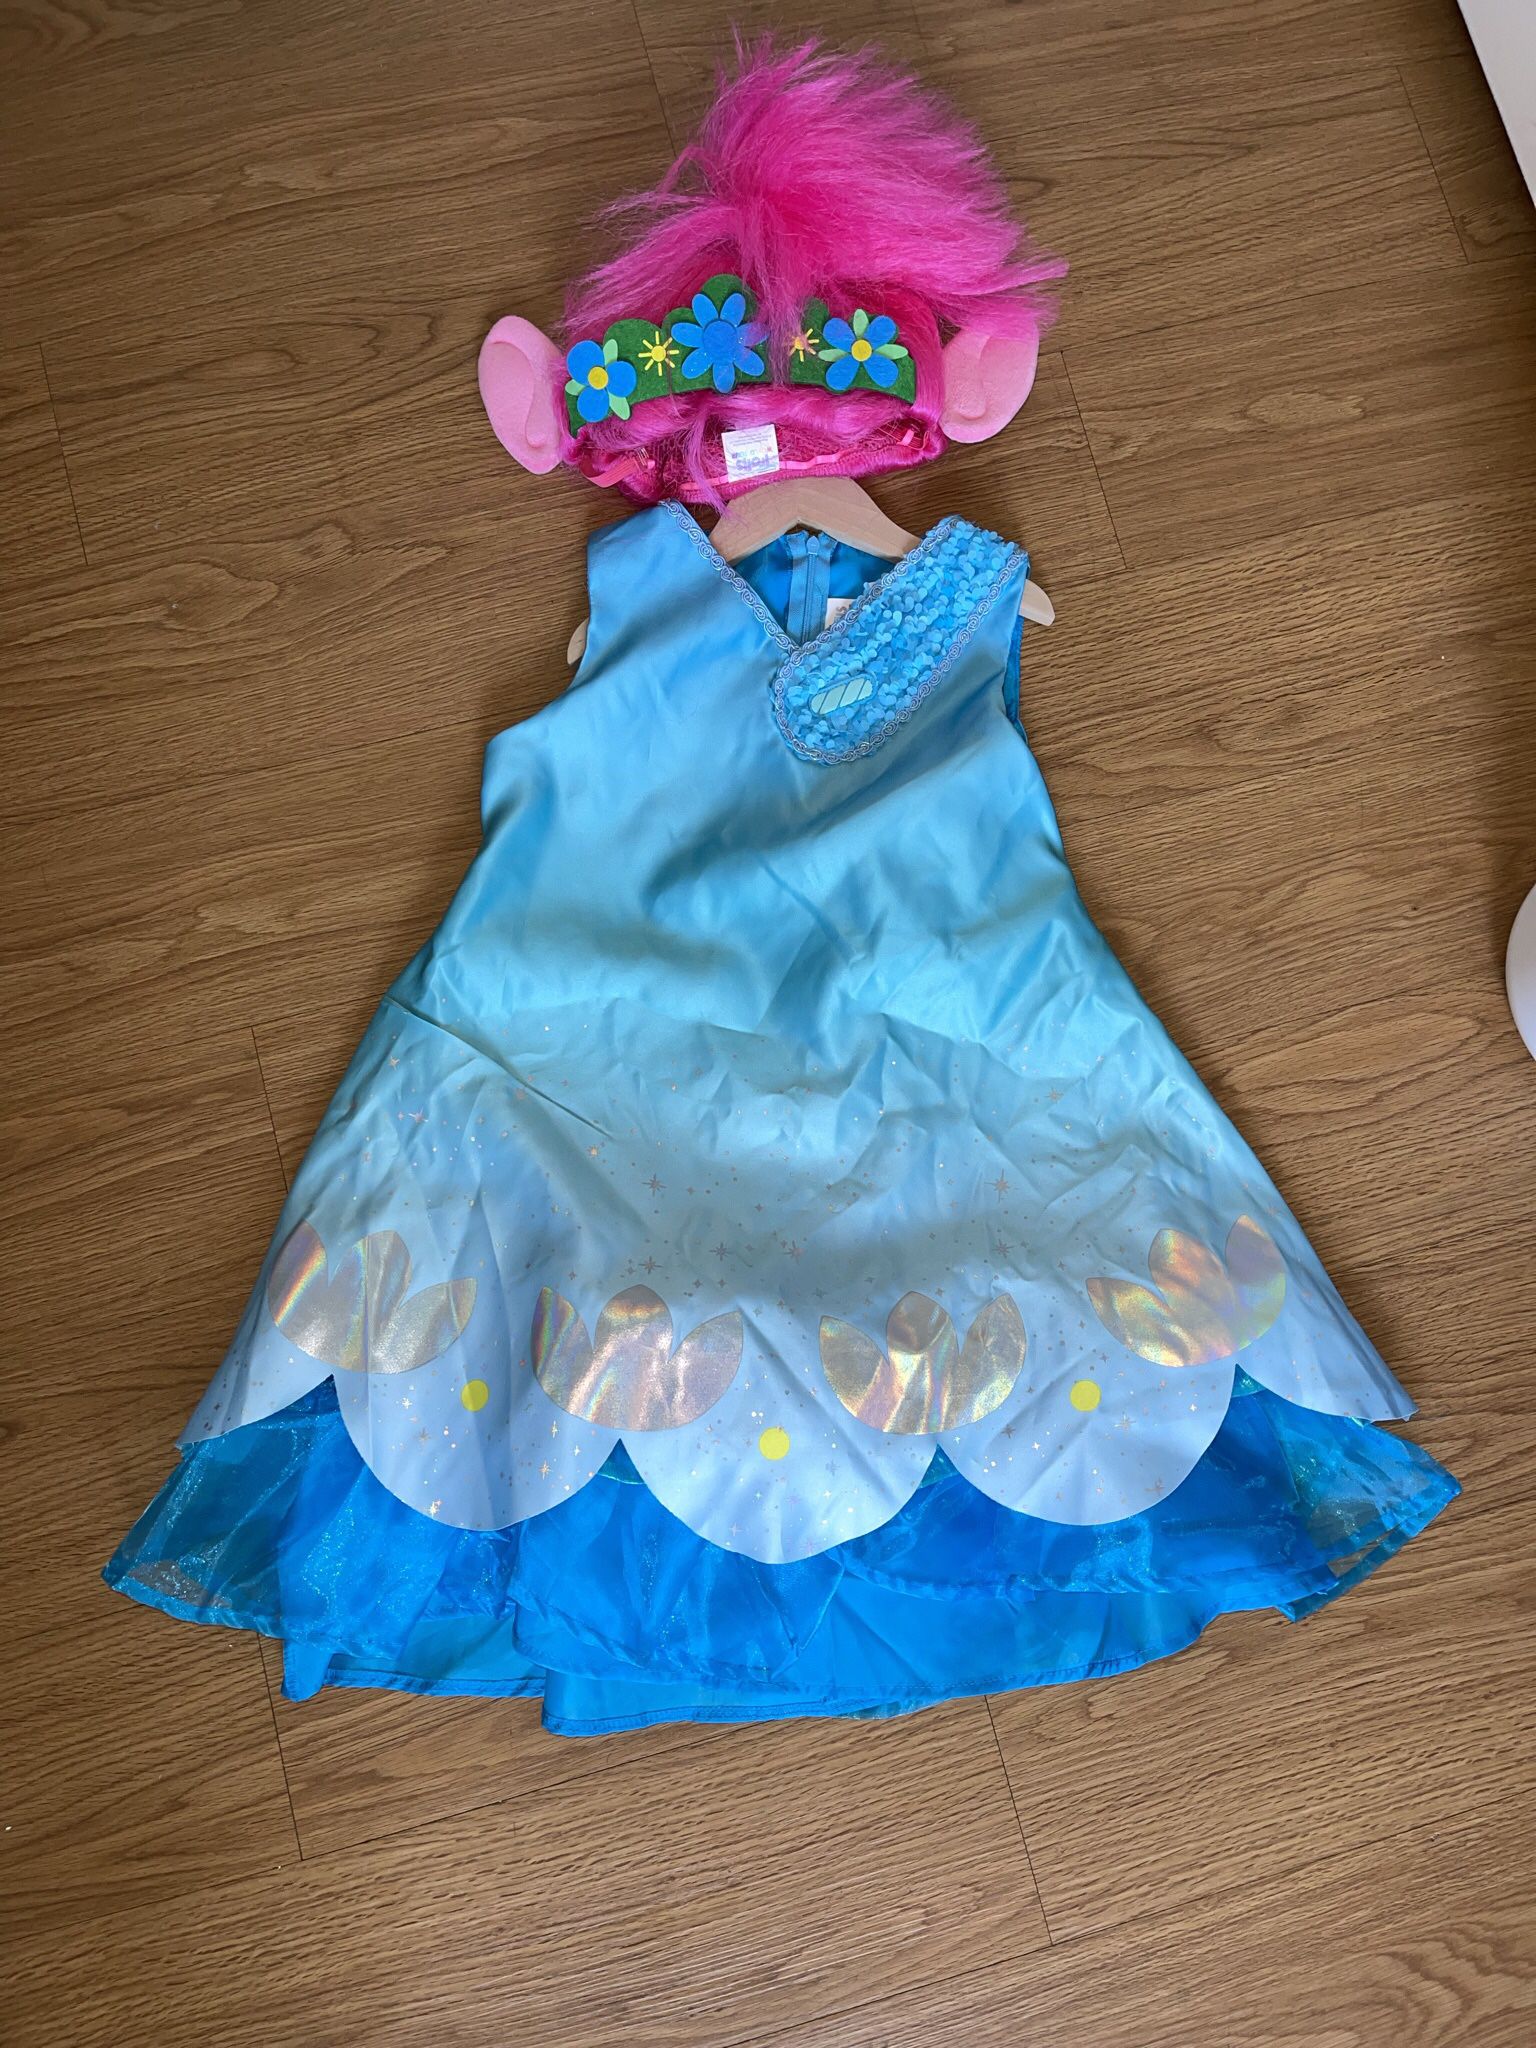 Trolls Child Queen Poppy Costume Size 6-8